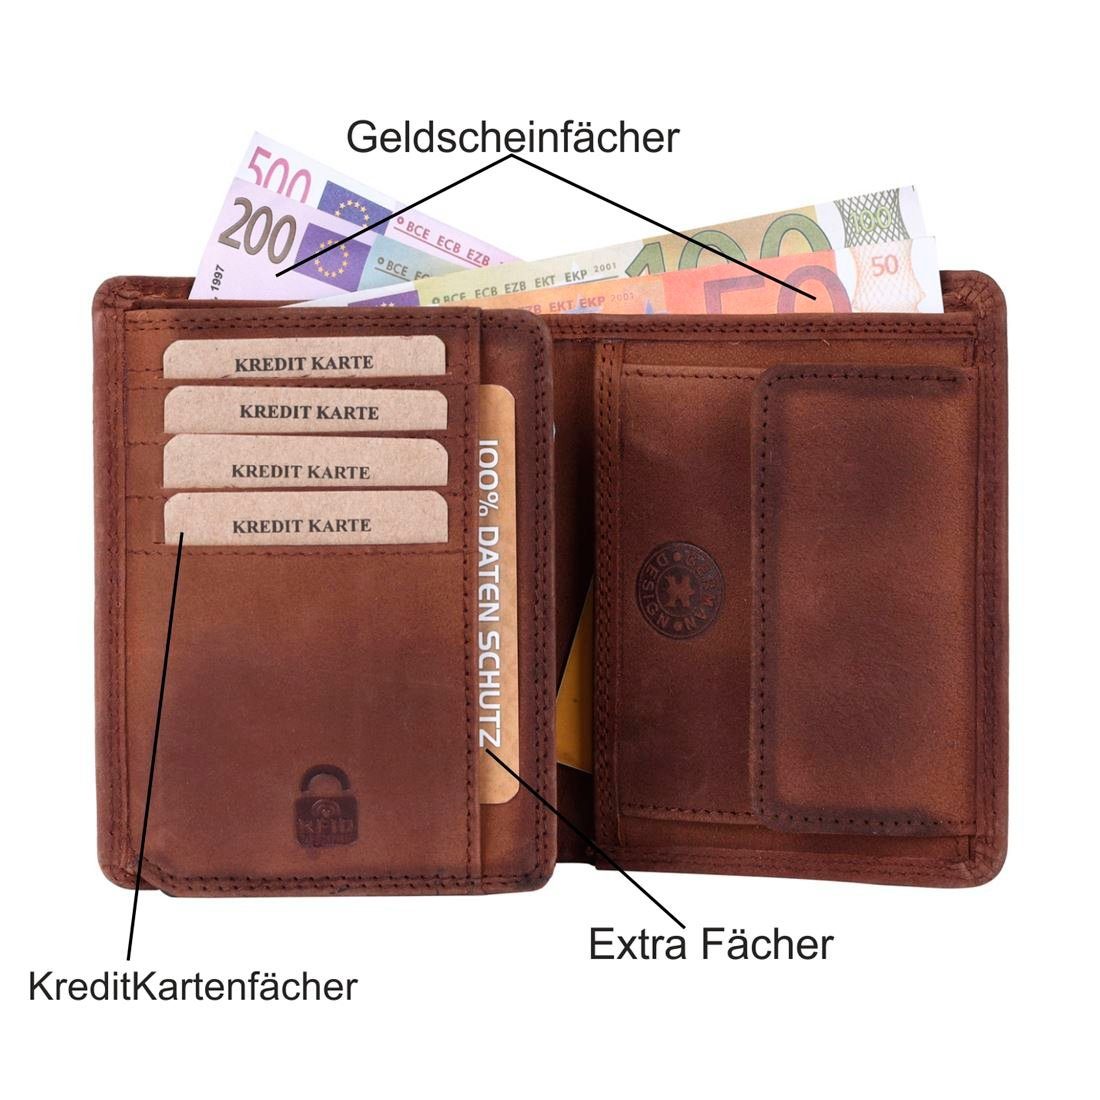 Herren Portemonnaie, Leder mit mit Münzfach Kette Brieftasche Geldbörse Börse SHG Schutz RFID